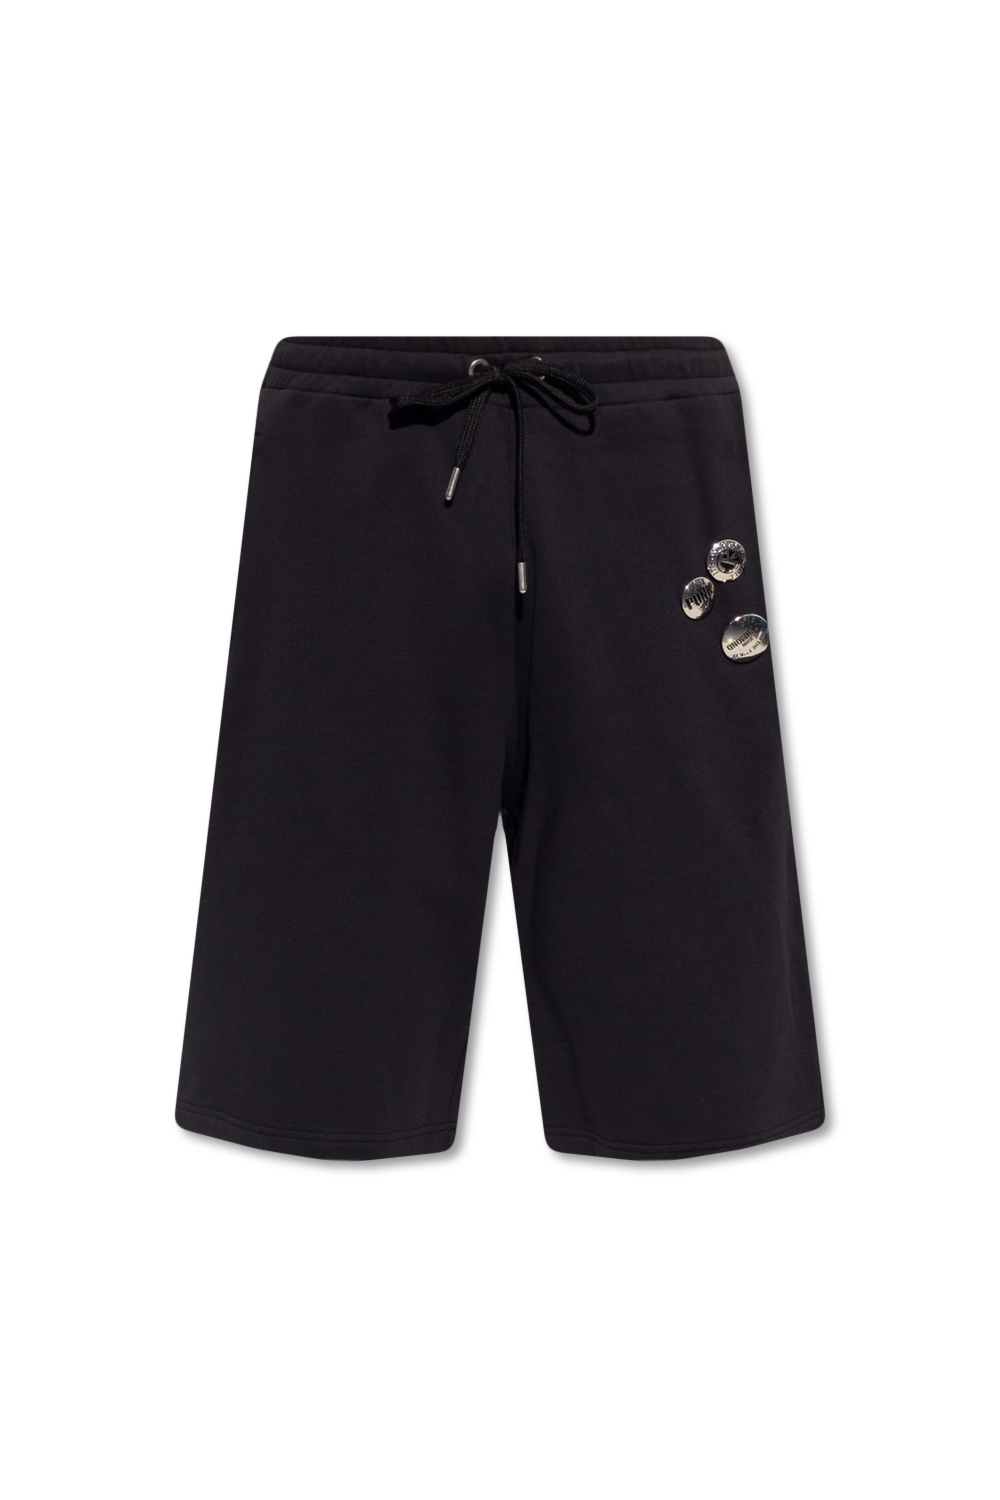 Louis Vuitton LVSE Soft Cargo Shorts black 48 M